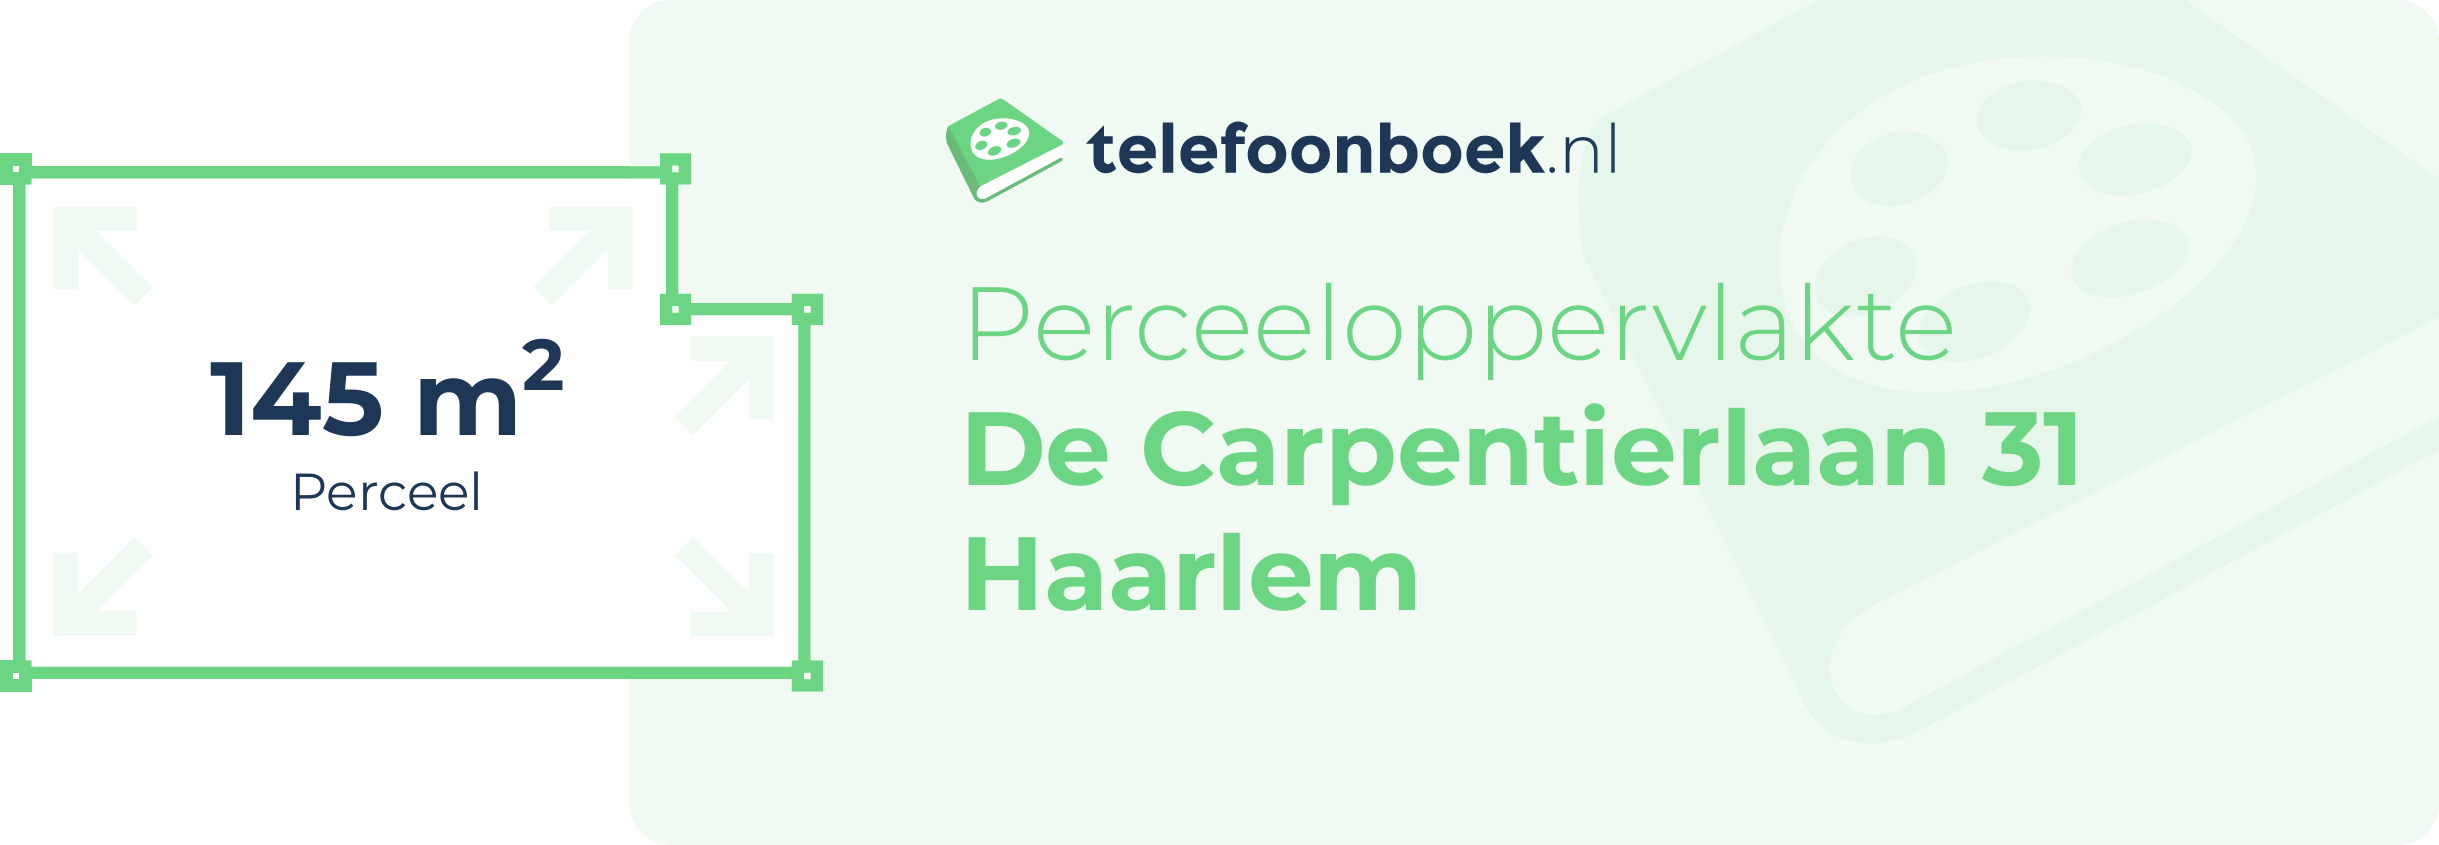 Perceeloppervlakte De Carpentierlaan 31 Haarlem